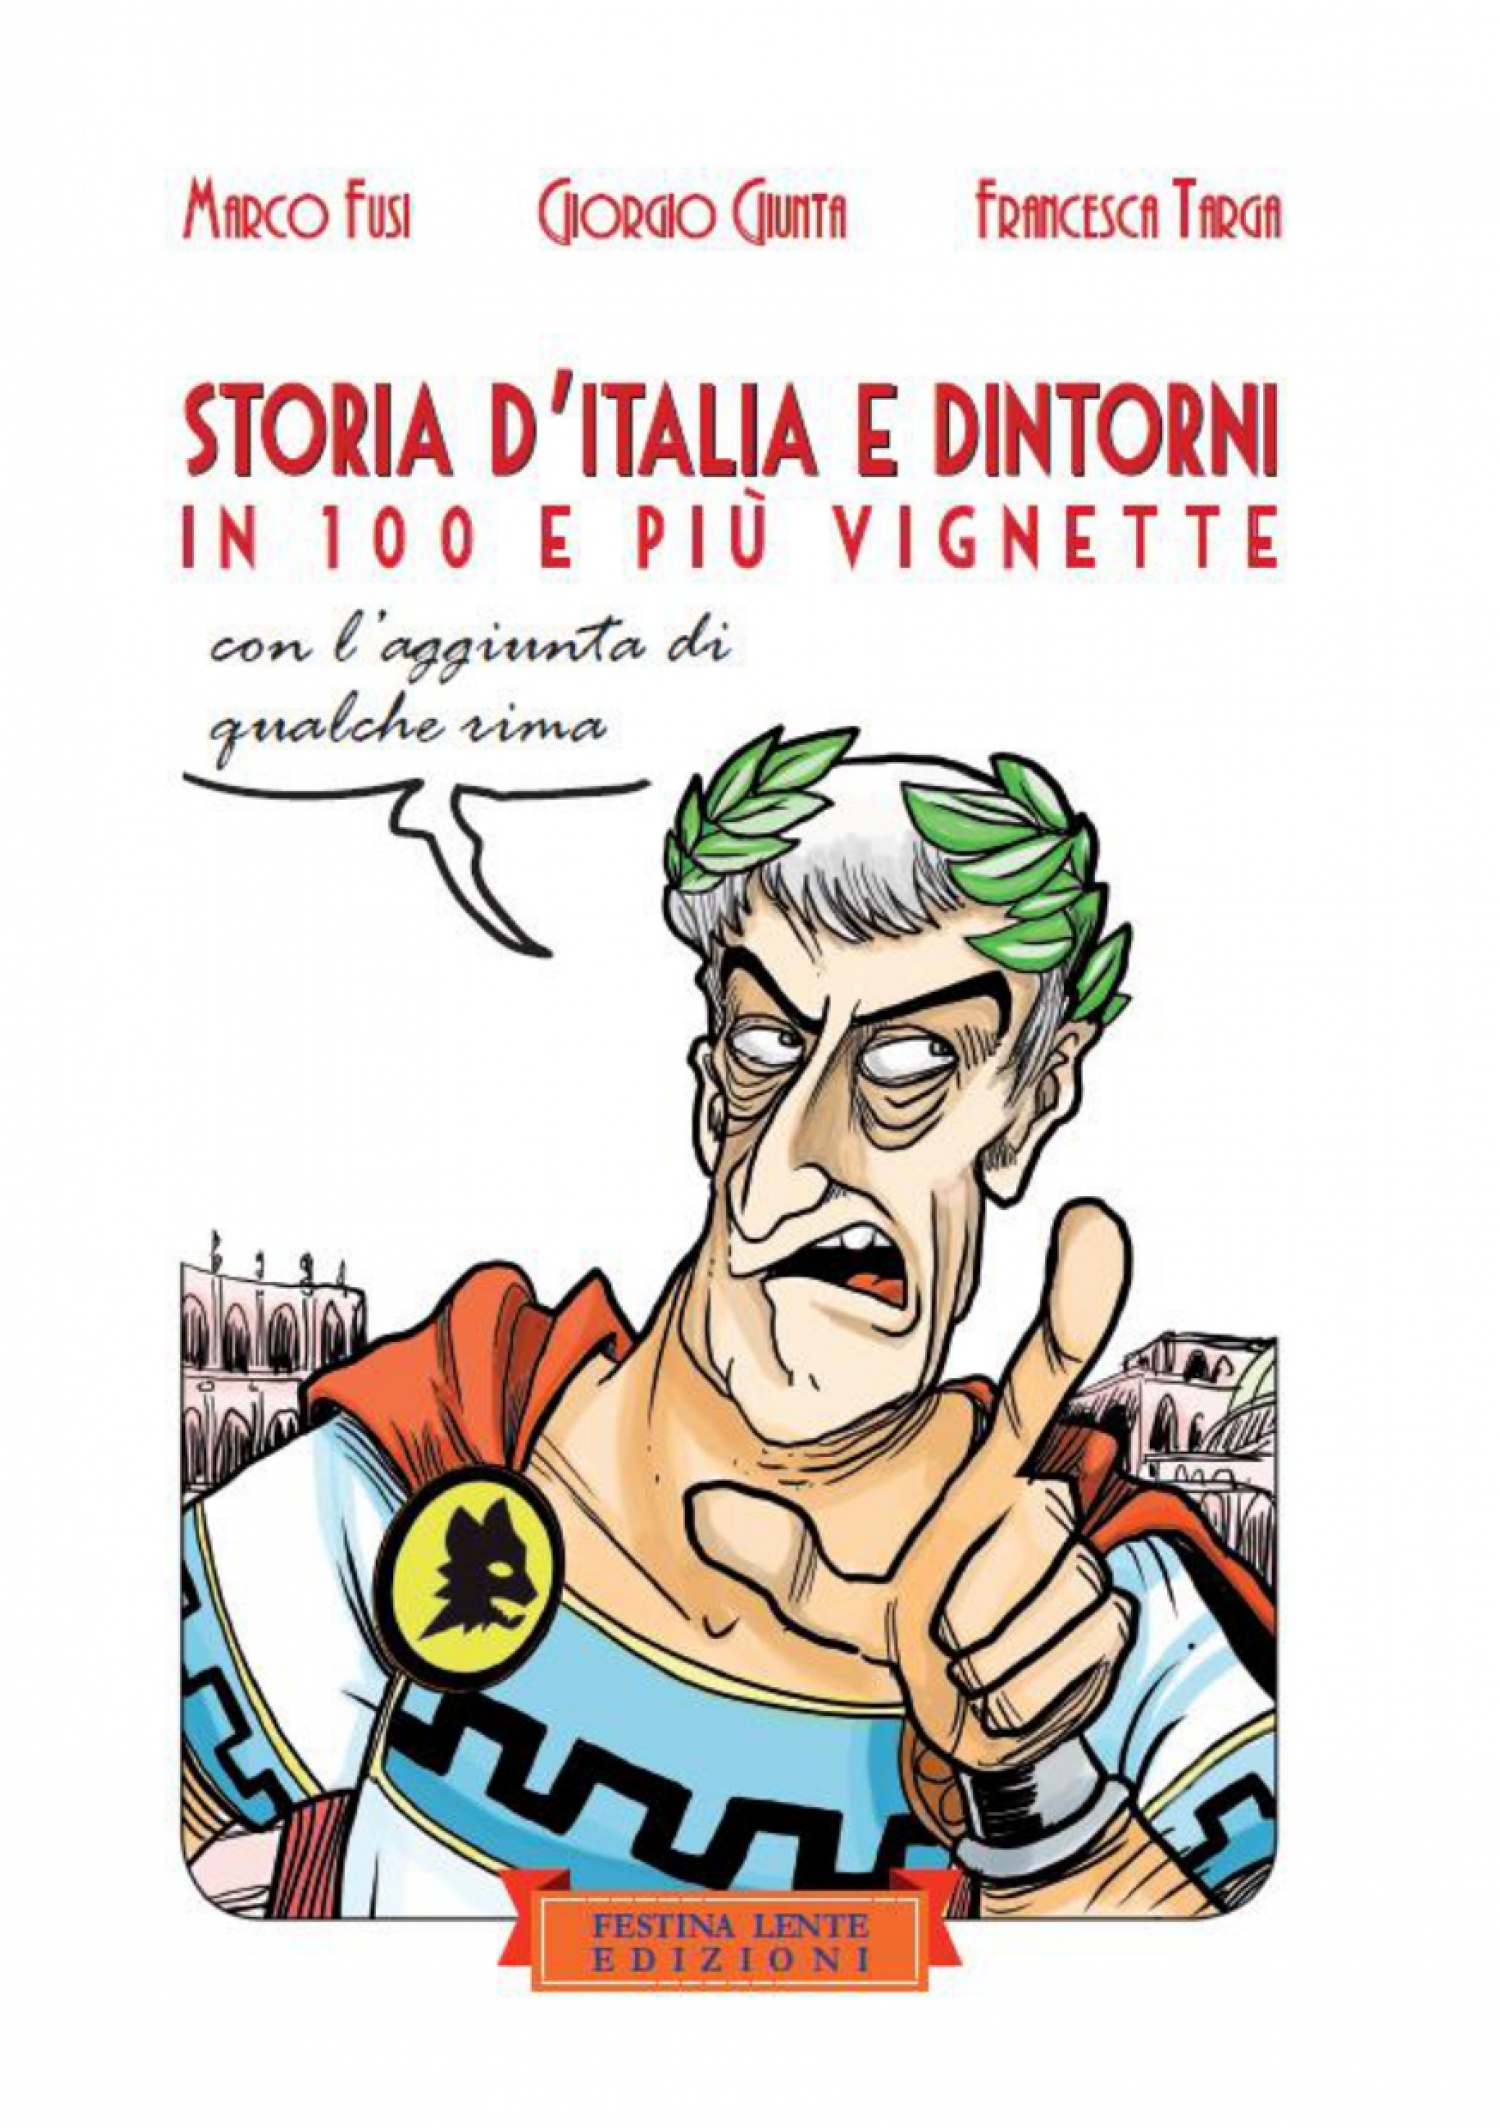 <p><strong>Domenica 30 gennaio alle 17:30&nbsp;gli autori Marco Fusi e Giorgio Giunta presenteranno il loro libro &quot;Storia d&#39;Italia e dintorni in cento e pi&ugrave; vignette&quot;. A seguire, Giorgio Giunta parler&agrave; del suo nuovo libro, &quot;La mia maratona&quot; (Sportitalia Edizioni).</strong></p><p>&nbsp;</p><p><a target="_blank" href="https://www.festinalenteedizioni.it/prodotto/storia-d-italia-in-100-vignette/"><strong>Storia d&#39;Italia e dintorni in cento e pi&ugrave; vignette</strong></a></p><p>&Egrave; possibile riscrivere la storia a proprio uso e consumo? Certo, i potenti lo fanno da sempre. Ebbene con questo libro gli autori hanno voluto prendersi la rivincita e dare un senso alla nota frase di Karl Marx: &laquo;La storia si ripete due volte: la prima volta come tragedia, la seconda come farsa&raquo;. In questo libro&nbsp;la storia diventa farsa, parodia, umorismo, uno specchio deformante che per&ograve; a suo modo riflette e che consente di ridere e rifarsi delle scene mute durante le interrogazioni. Un libro per indorare l&rsquo;amara pillola della storia nozionistica.</p><p>&nbsp;</p><p><a target="_blank" href="https://www.sportitaliaedizionishop.it/autori/la-mia-maratona"><strong>La mia maratona</strong></a><br />42 km di graphic novel, scanditi uno per pagina nei quali vivr&agrave; e rivivr&agrave; tutte le sensazione di una gara che avvicinandosi al traguardo si far&agrave; sempre pi&ugrave; dura.&nbsp;Durante la gara, il&nbsp;nostro runner protagonista&nbsp;ricorder&agrave; i suoi esordi, i suoi allenamenti, i suoi infortuni, con un tono scanzonato e comico ma nel contempo rigoroso e sincero.<br />&nbsp;</p>